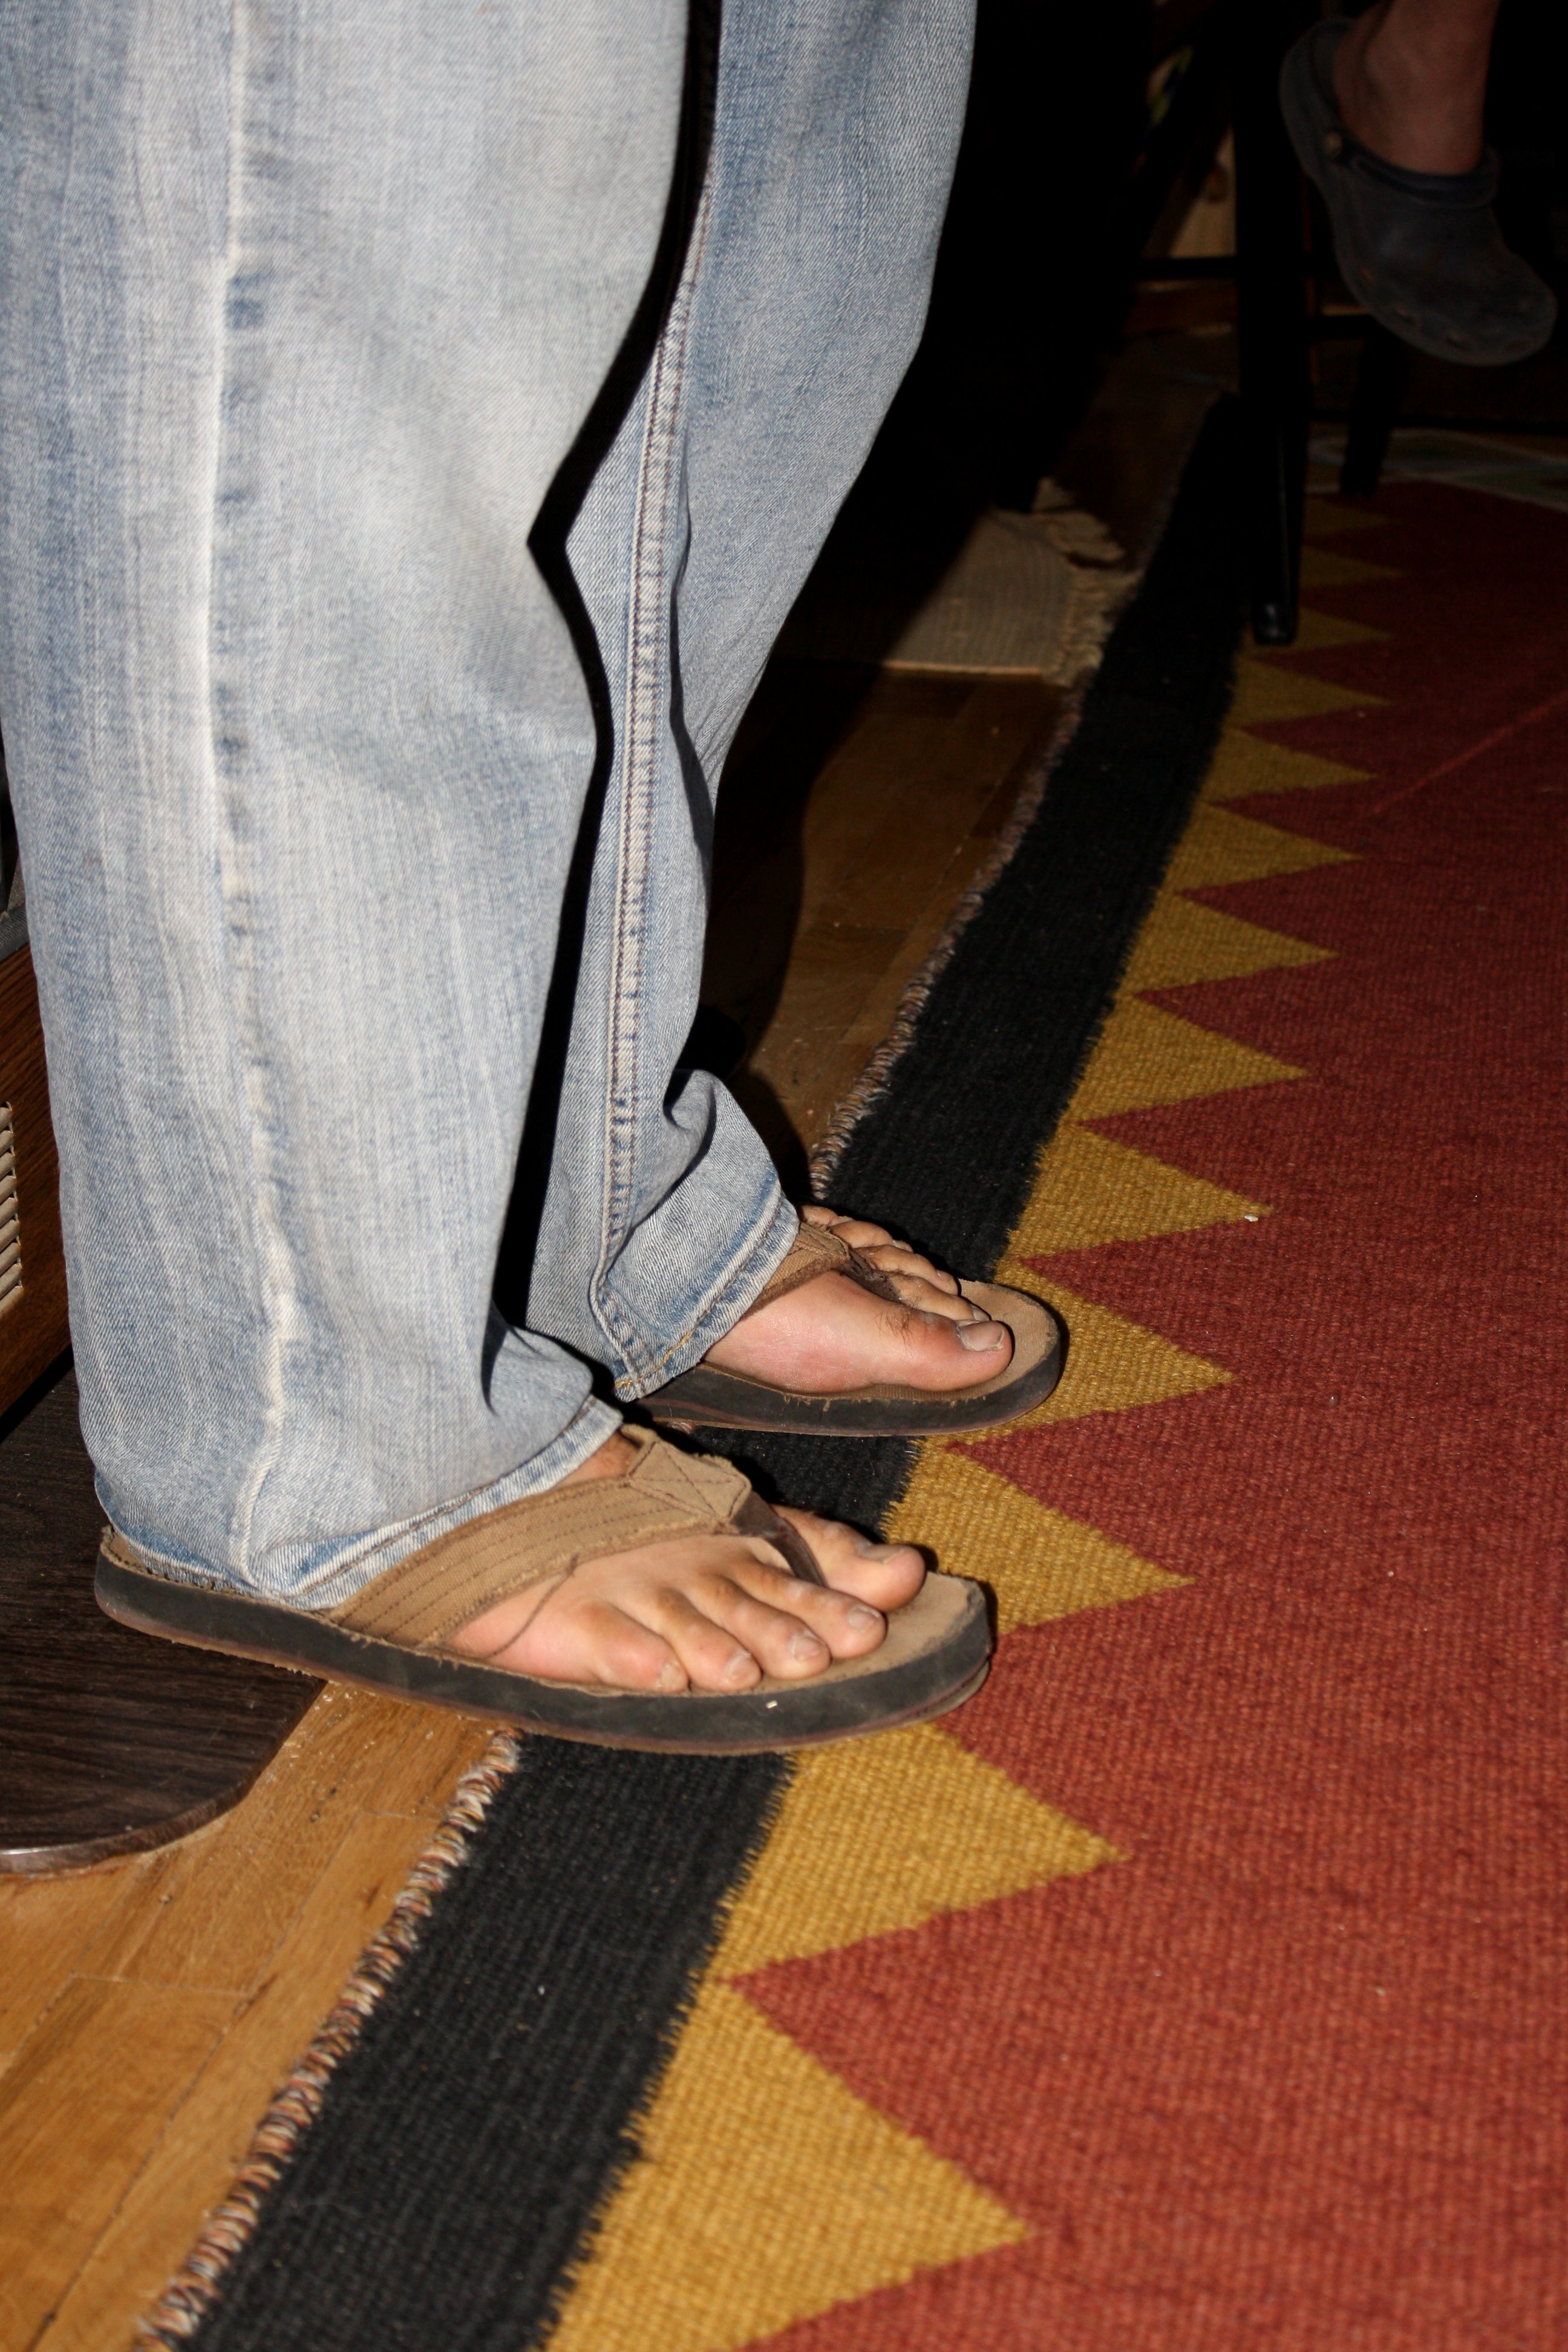 Men wearing flip flops sandals